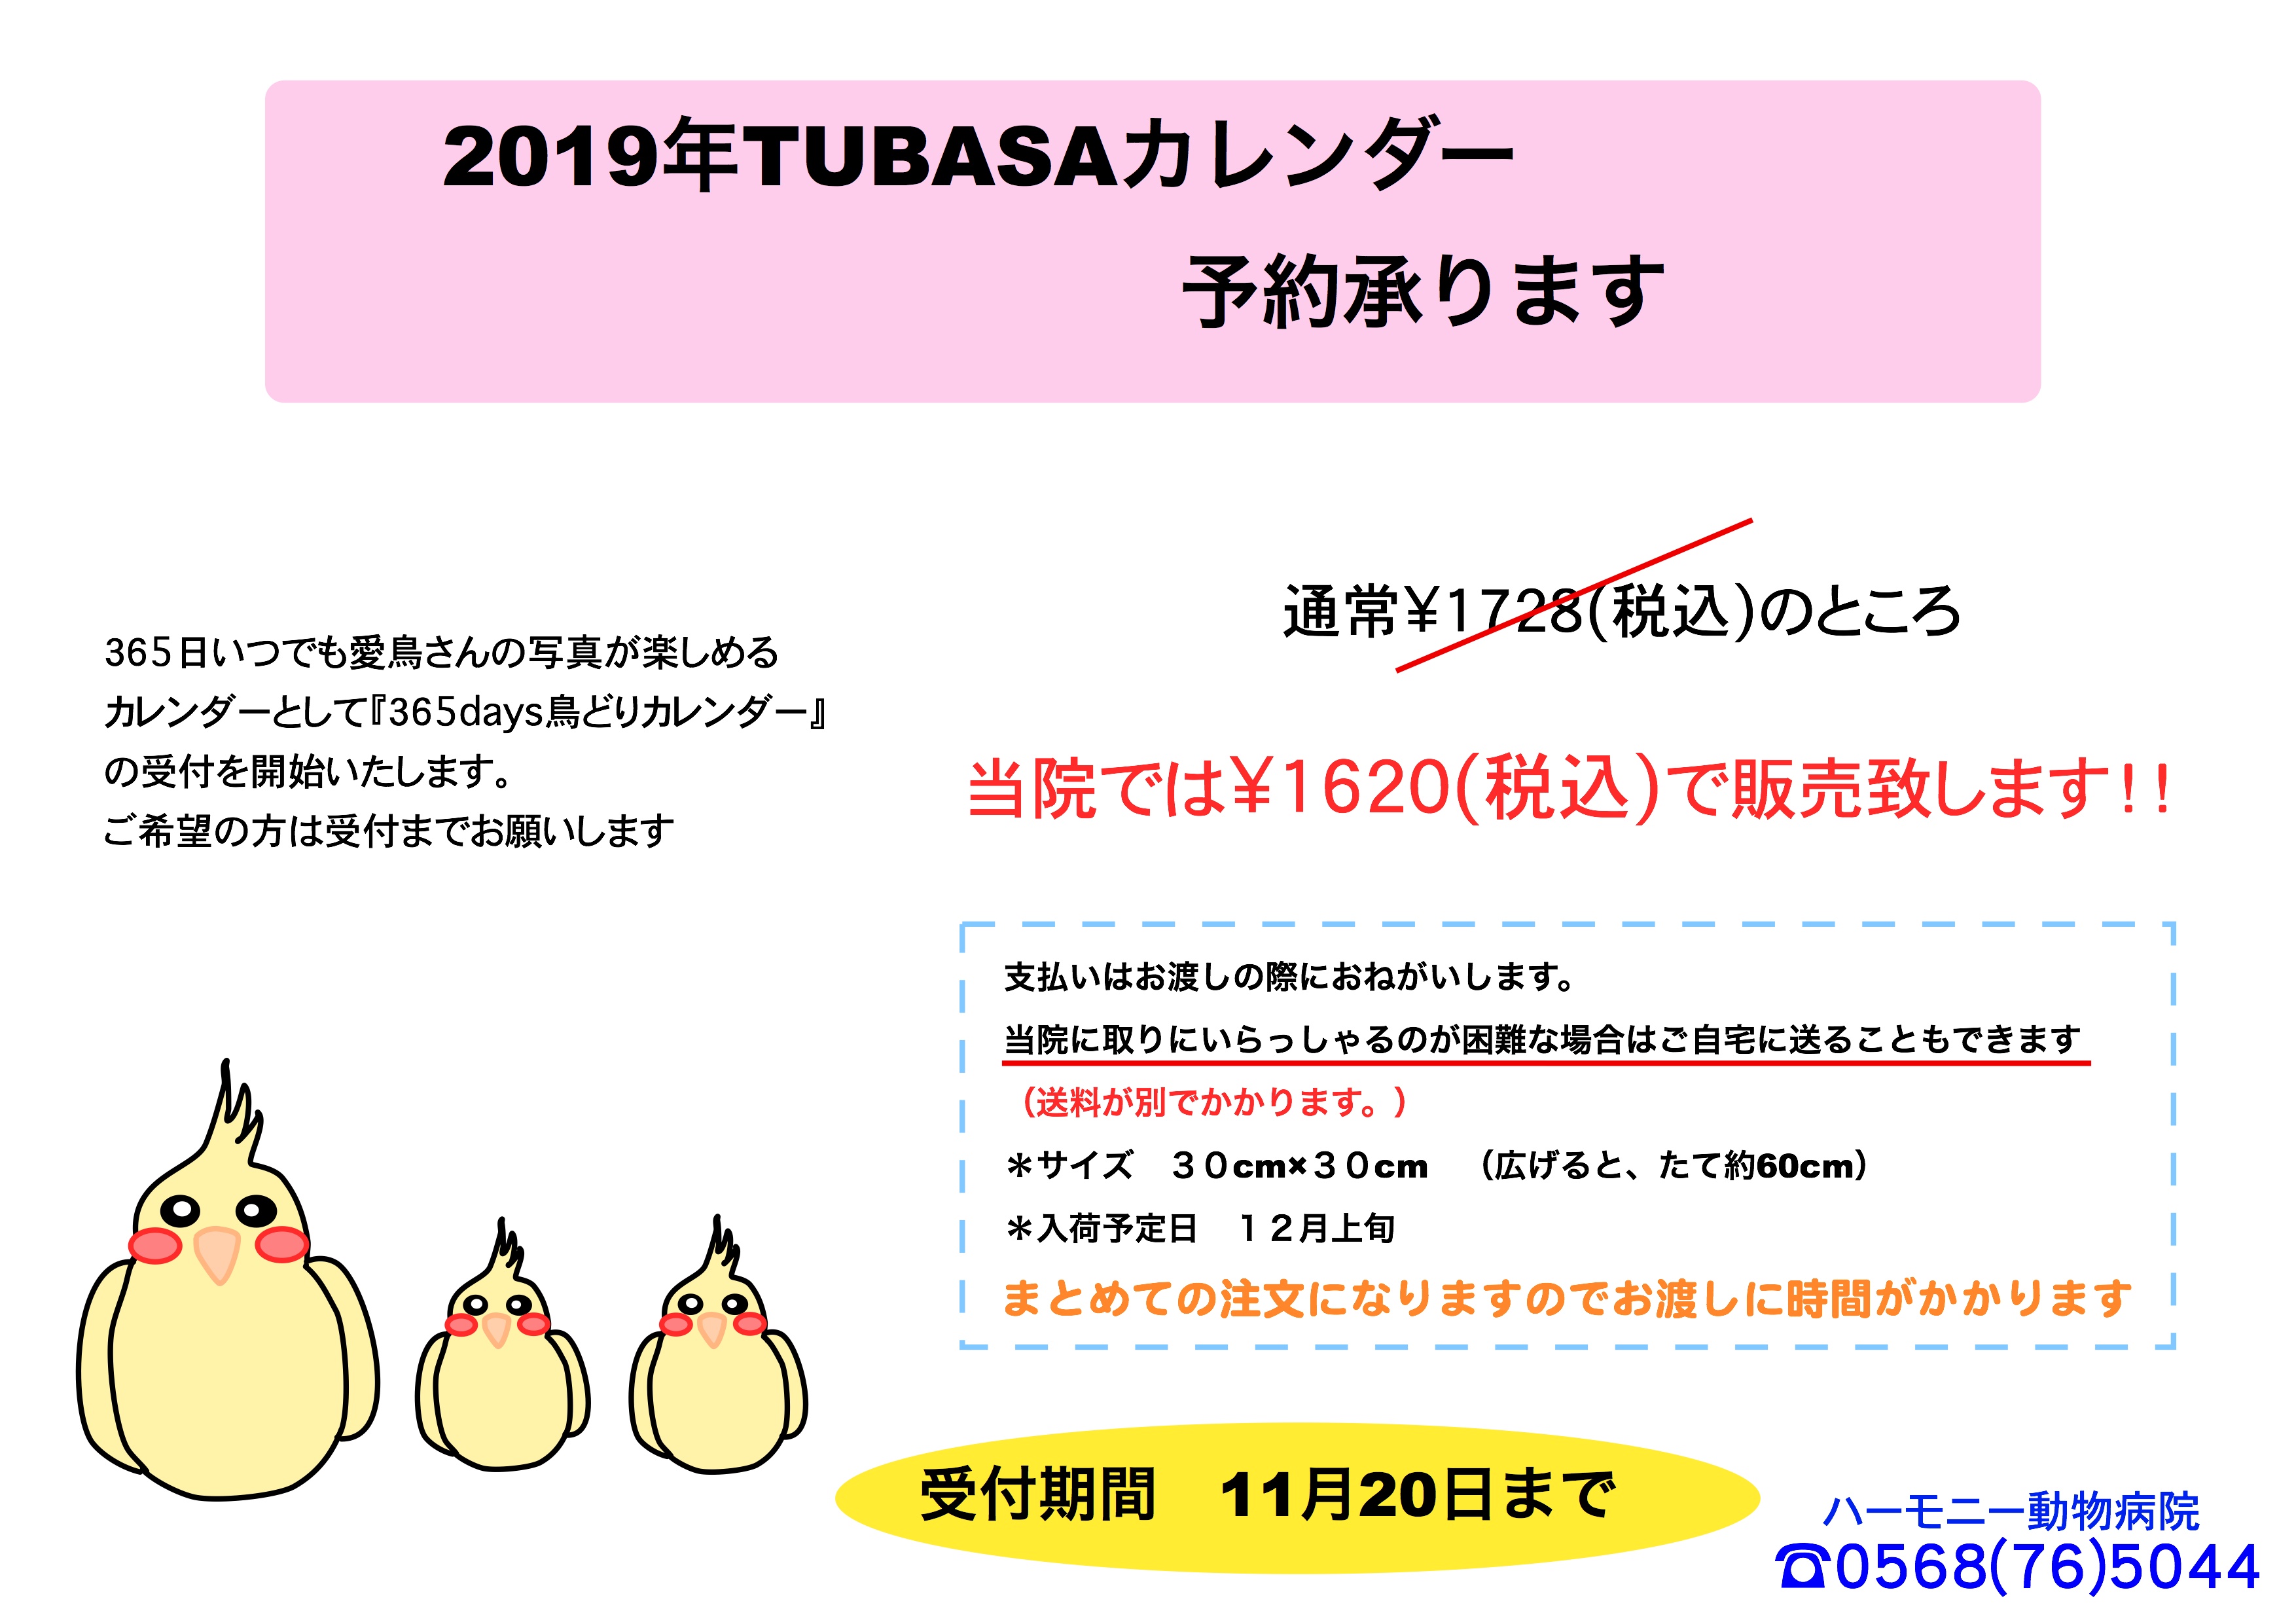 2019年版TUBASAカレンダー予約開始のお知らせ